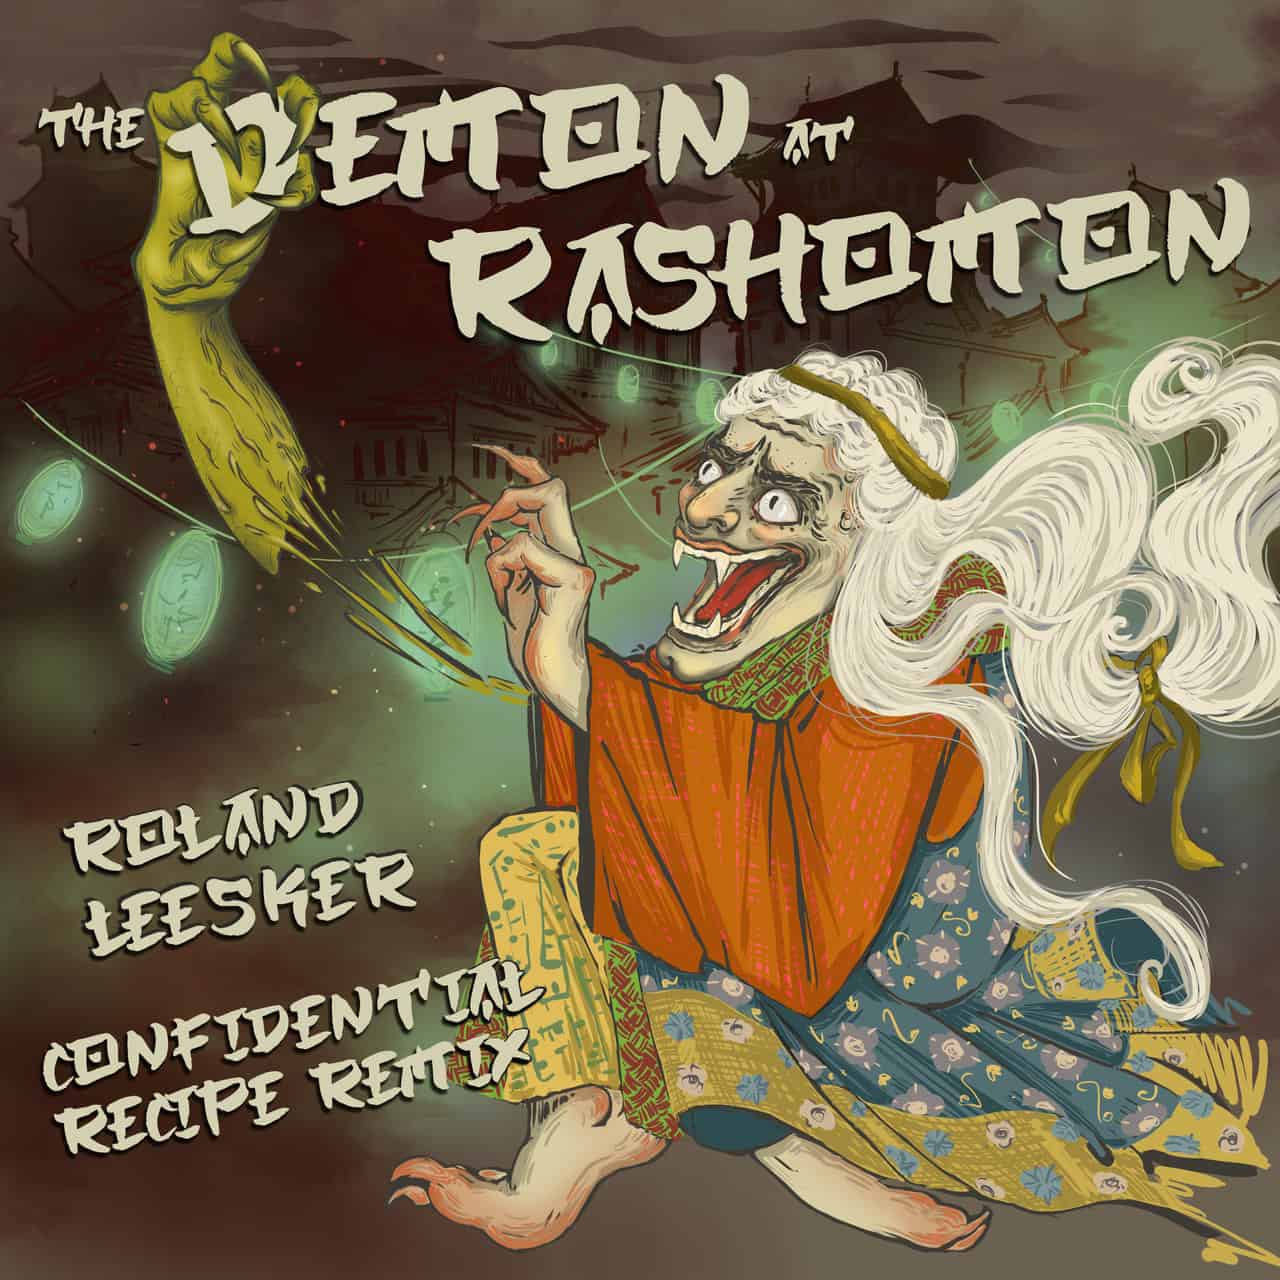 Download The Demon at Rashomon on Electrobuzz